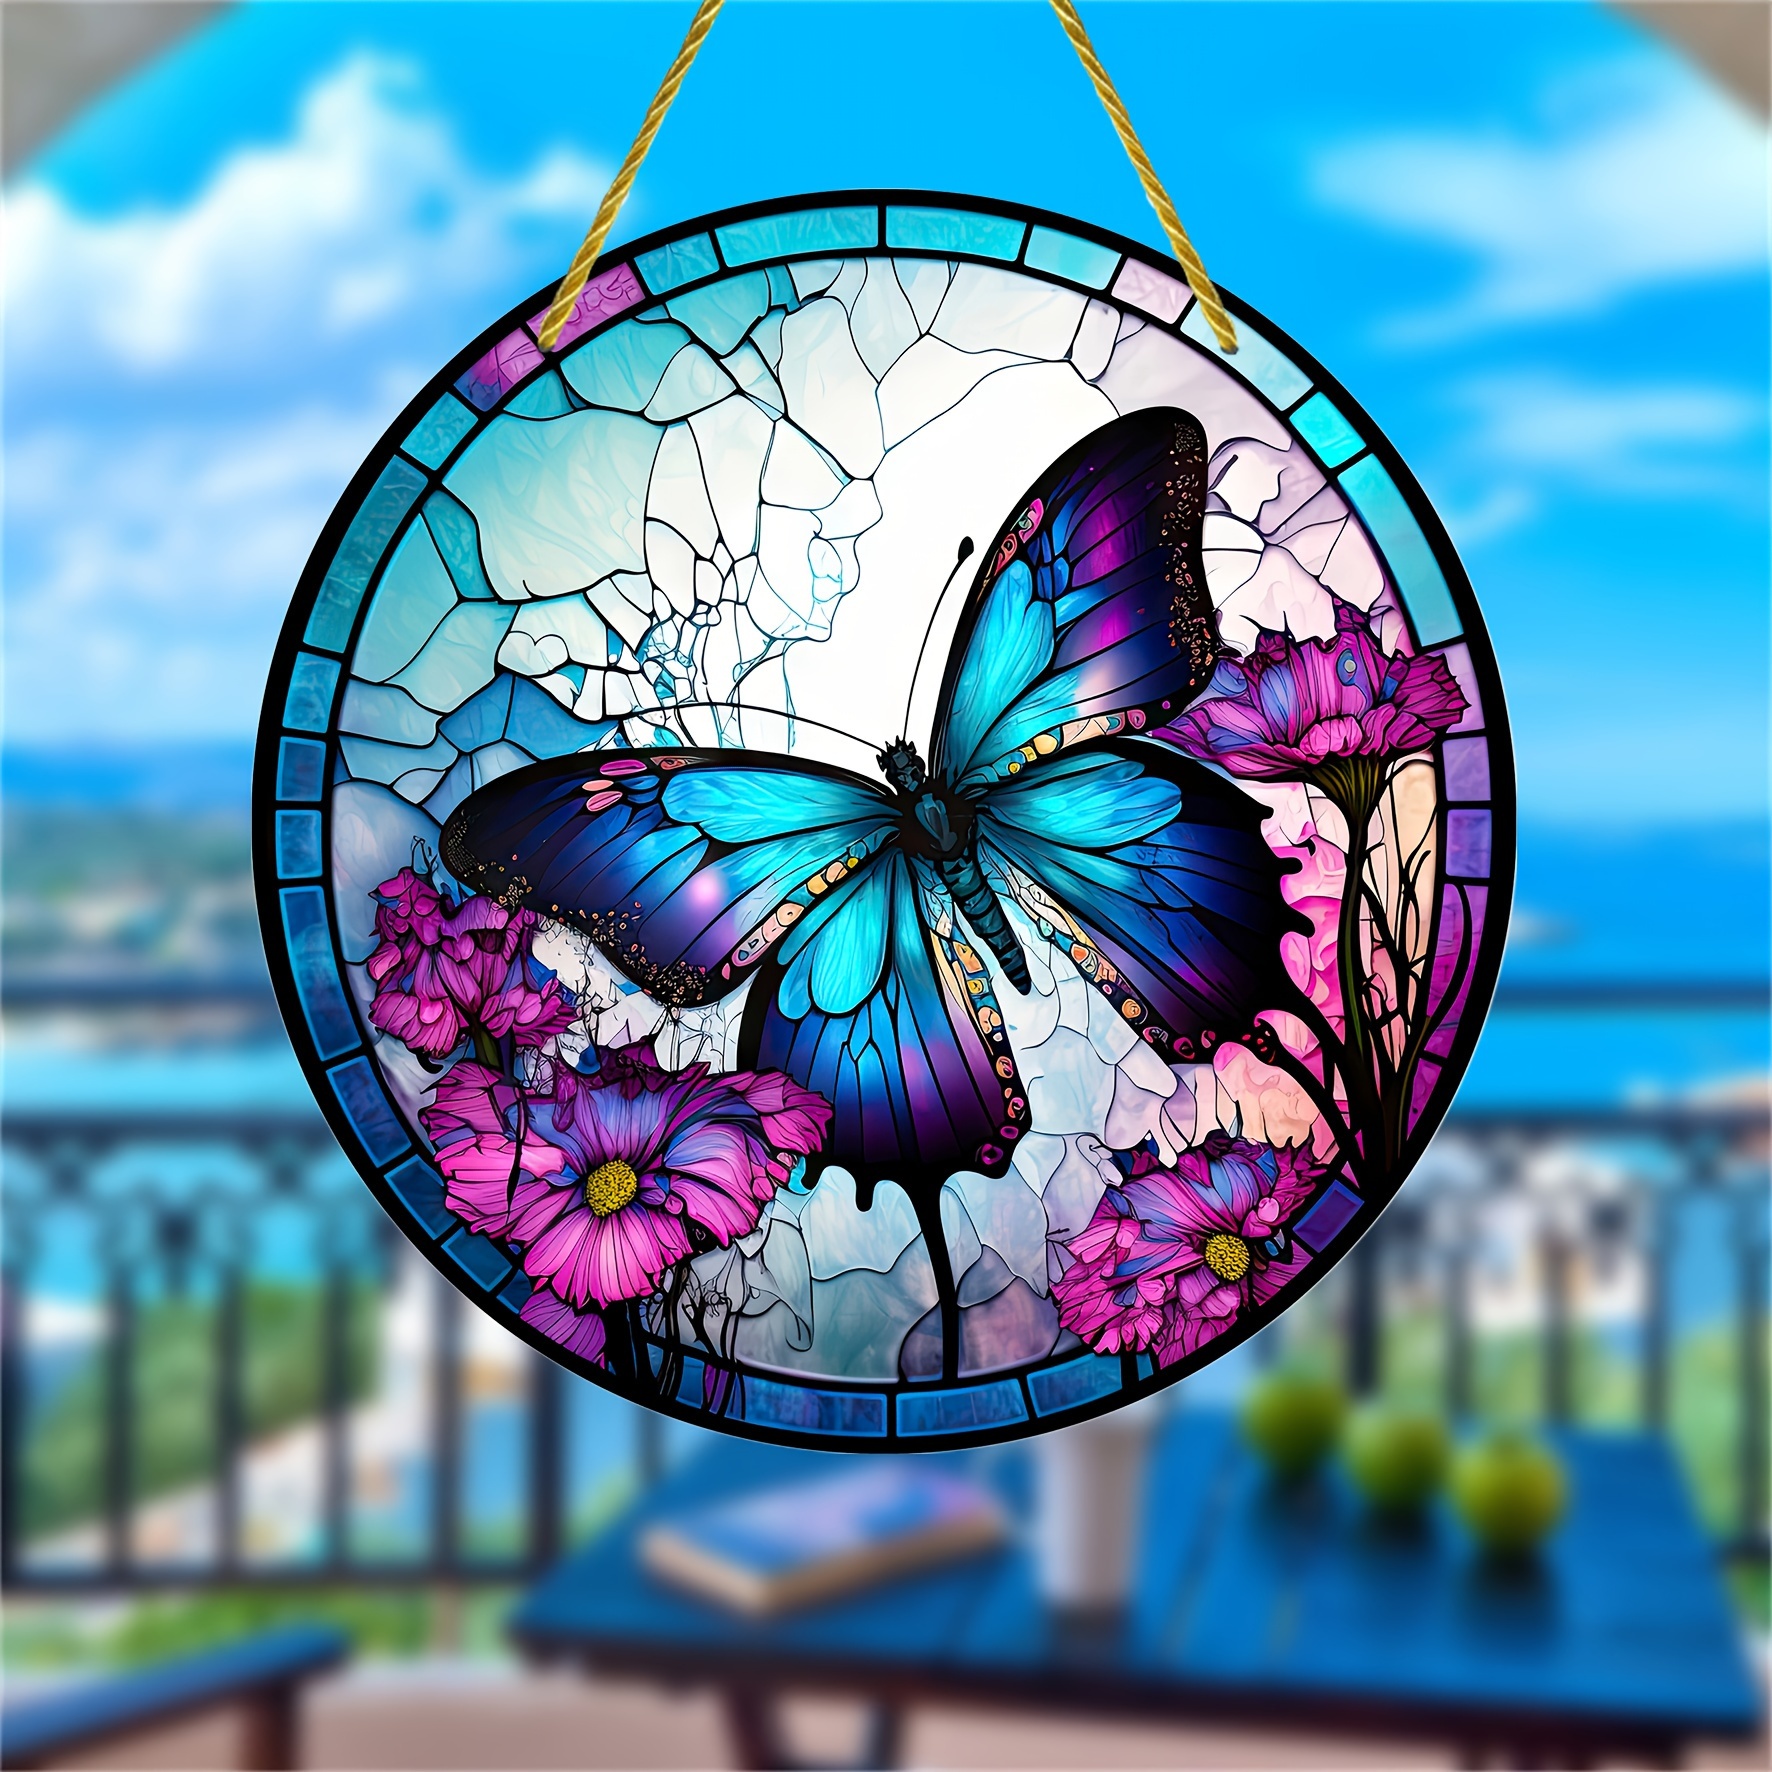 Attrape-Soleil en Cristal Prisme Suspendu fenêtre éolien Papillons